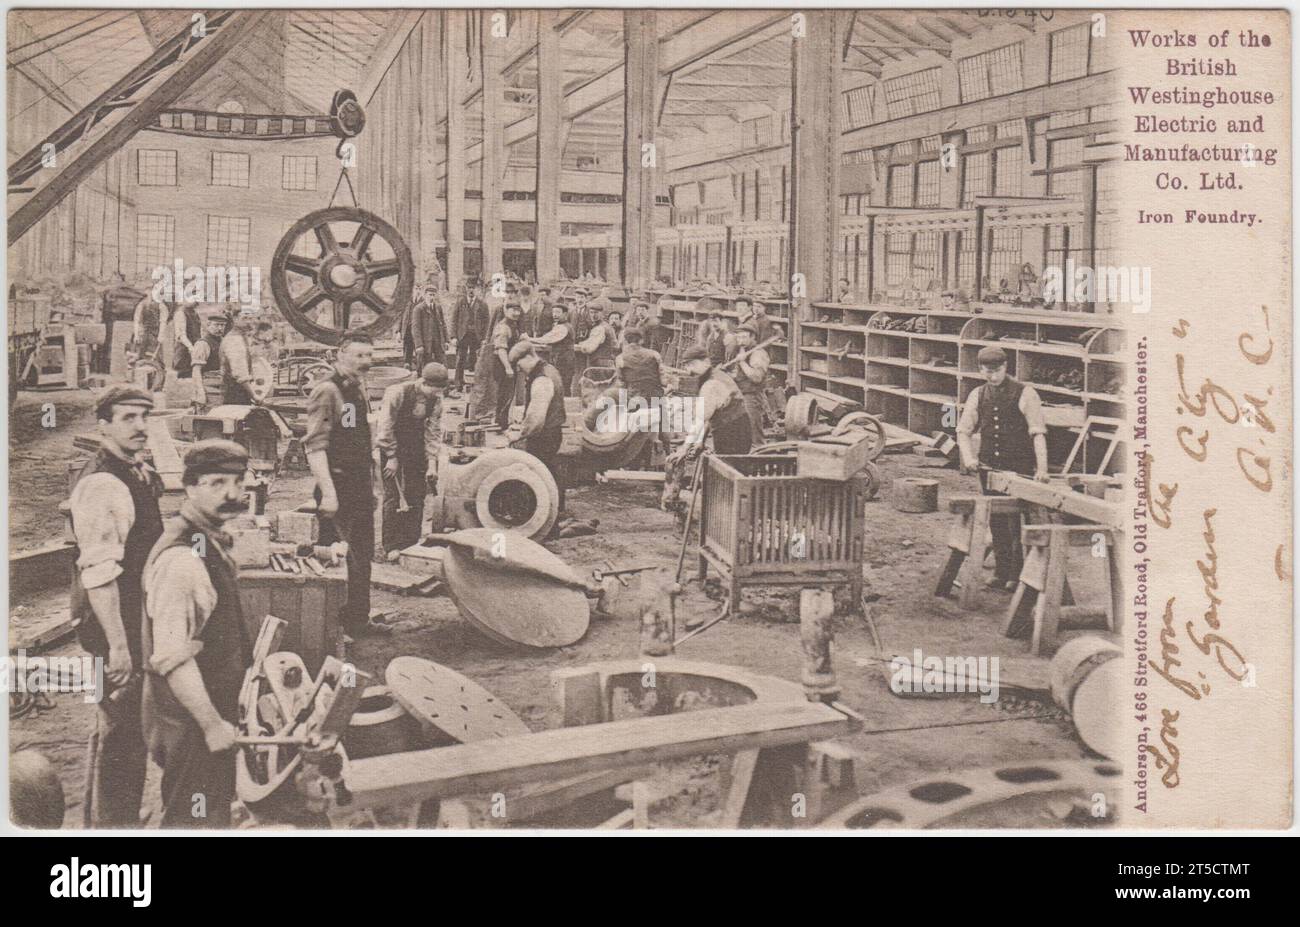 Travaux de la British Westinghouse Electric and Manufacturing Co. Ltd., fonderie de fer, Old Trafford, Manchester, début du 20e siècle Banque D'Images